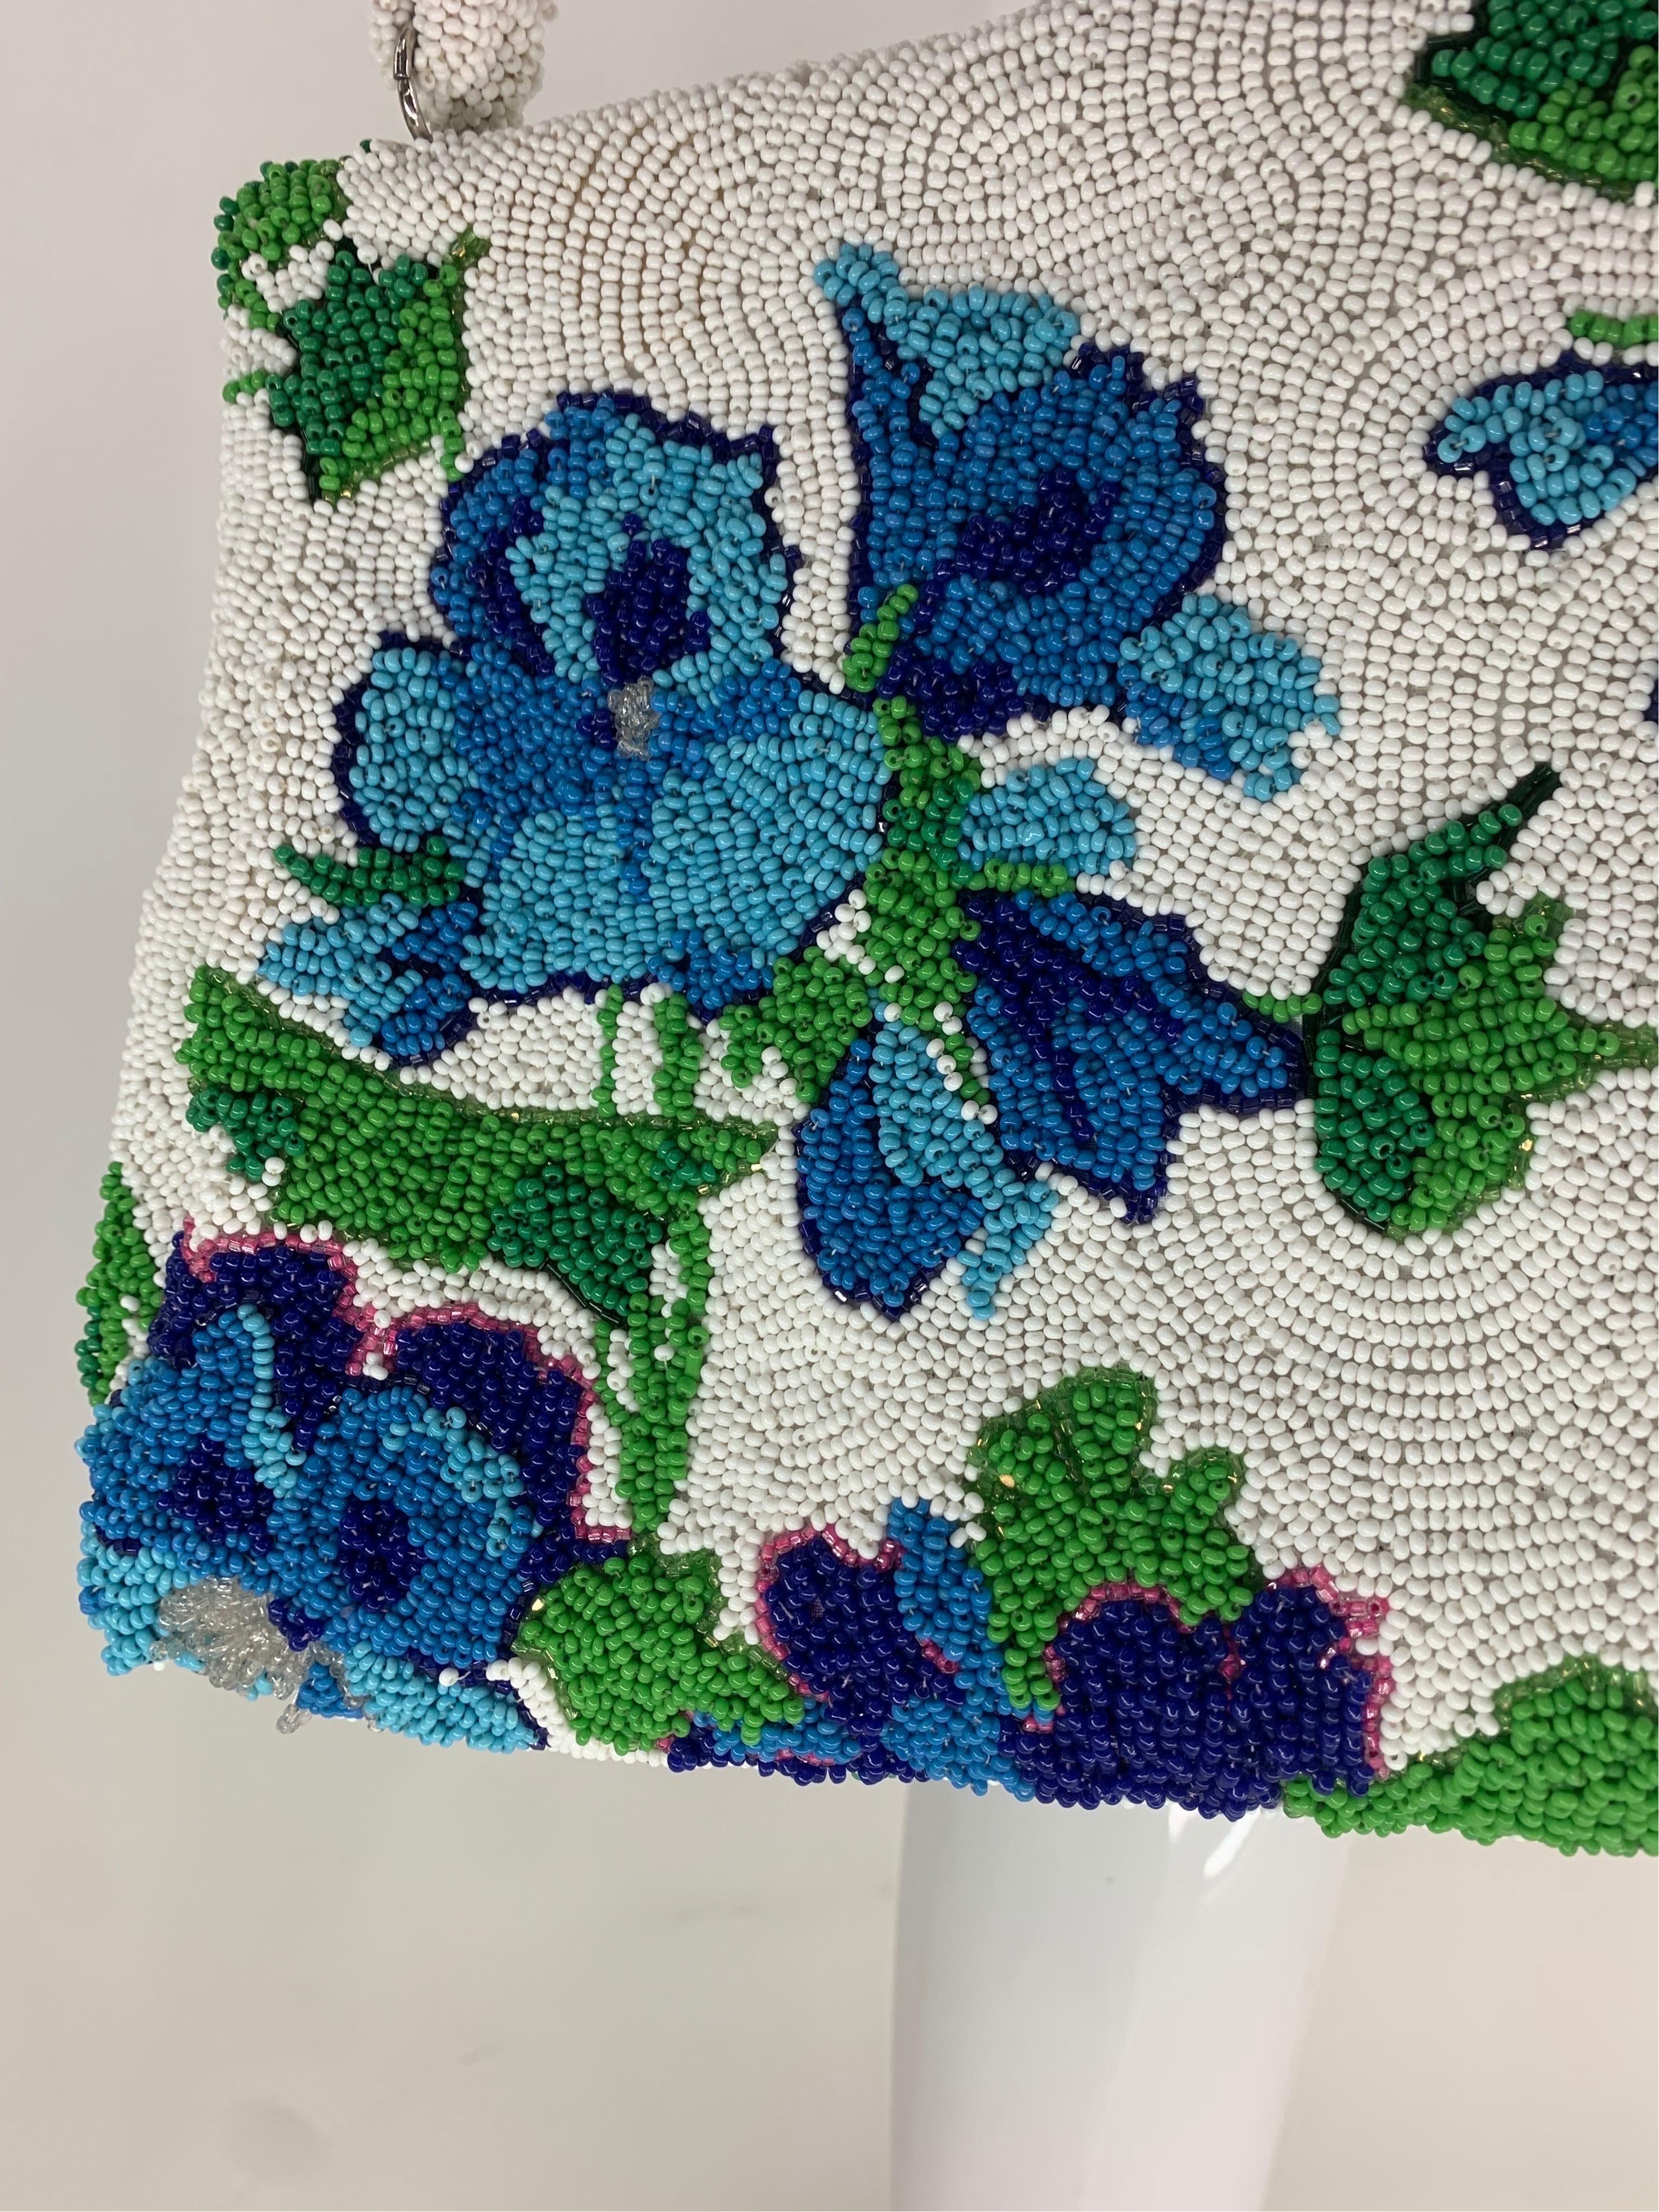 1950 Koret Tresor Stunning Floral Beaded Handbag In Green & Blue On White Ground For Sale 2